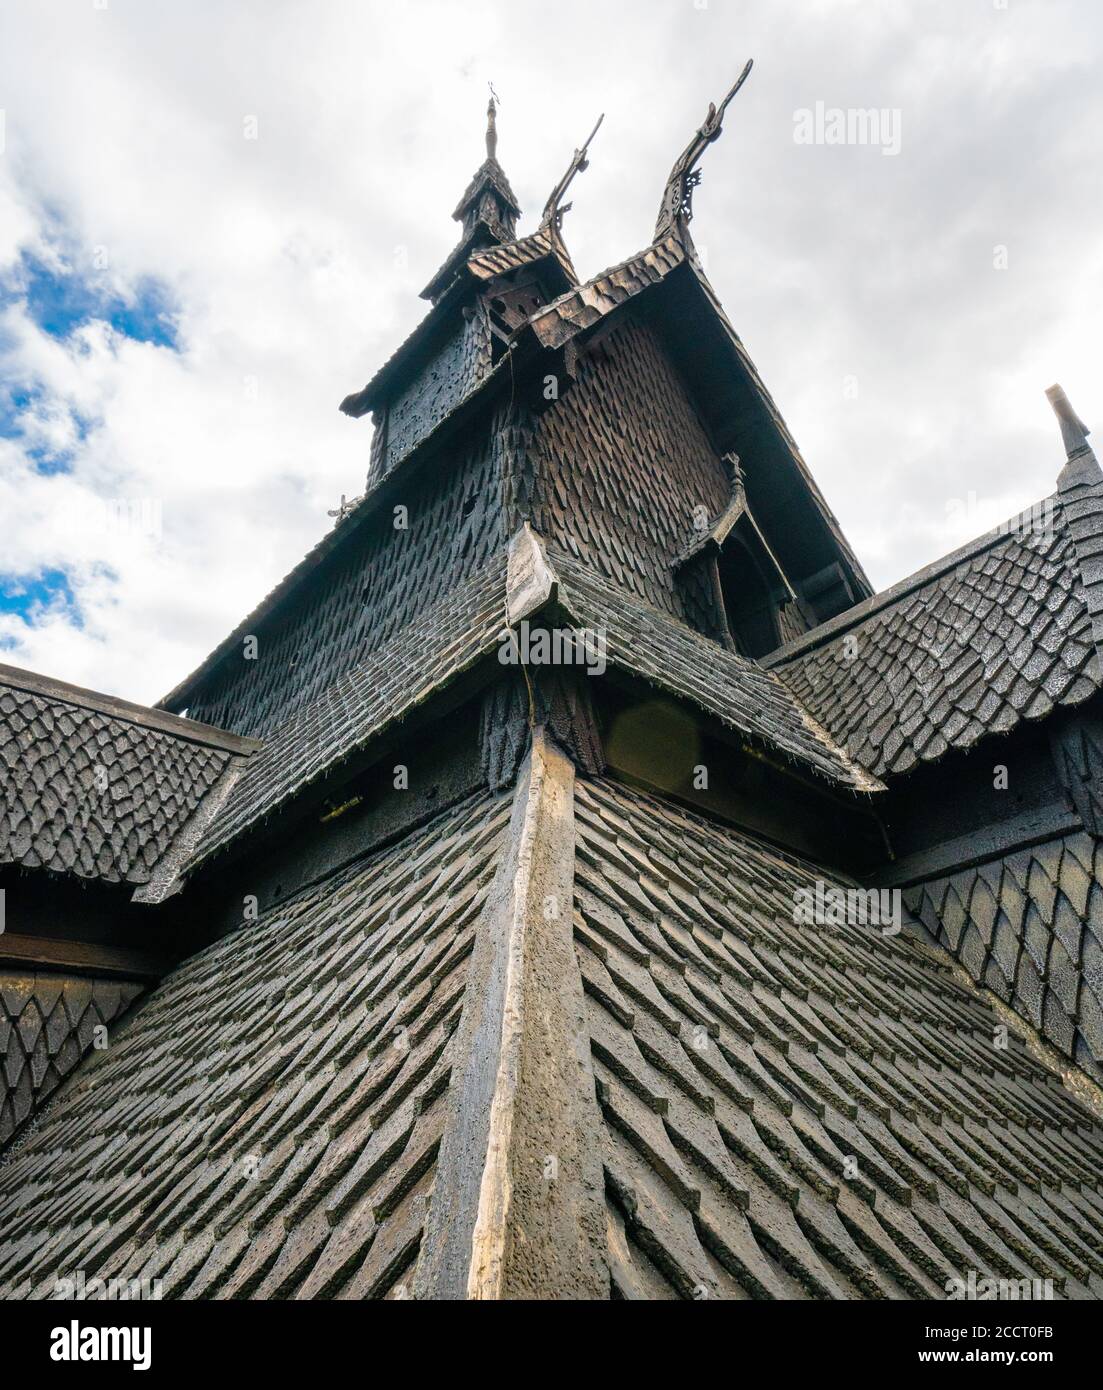 Fantastische Dachkonstruktion der Stabkirche Borgund am Kopf Von Laerdale in Vestland Mittelnorwegen komplett aus Holz gebaut Im 12. Jahrhundert Stockfoto